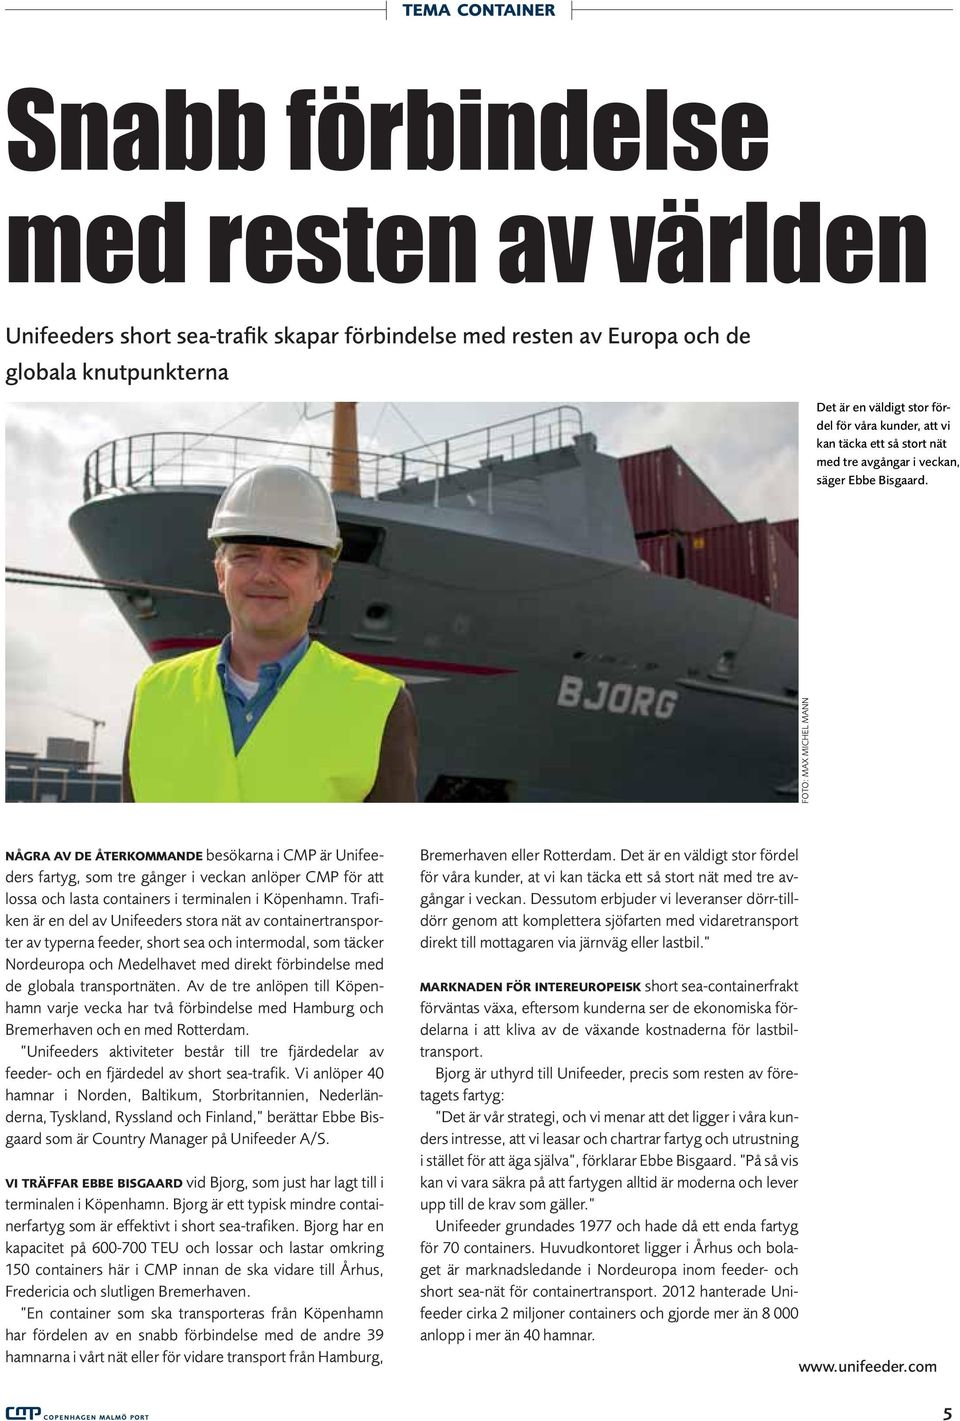 FOTO: MAX MICHEL MANN NÅGRA AV DE ÅTERKOMMANDE besökarna i CMP är Unifeeders fartyg, som tre gånger i veckan anlöper CMP för att lossa och lasta containers i terminalen i Köpenhamn.